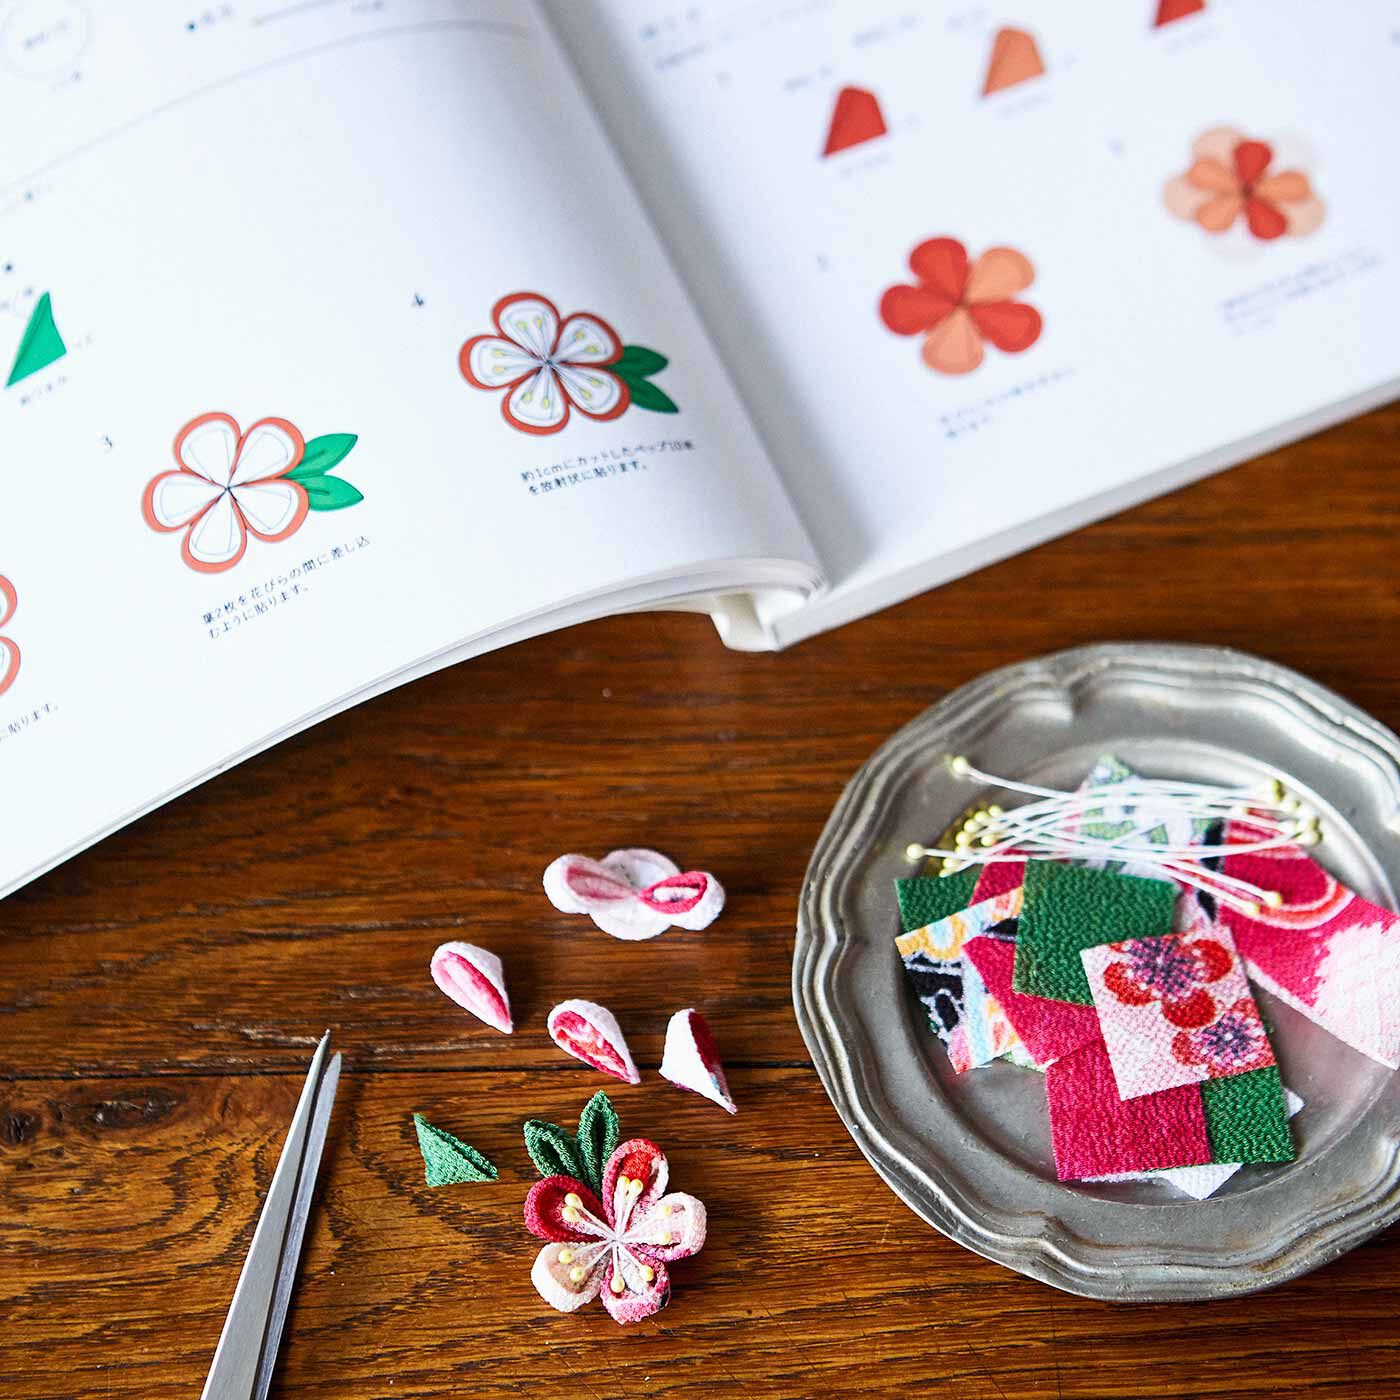 クチュリエ|四季折々に咲かせる　つまみ細工の花50デザイン　間彦由江さんからの贈りもの|まずは付録の材料セットでつまみ細工を体験してみて。